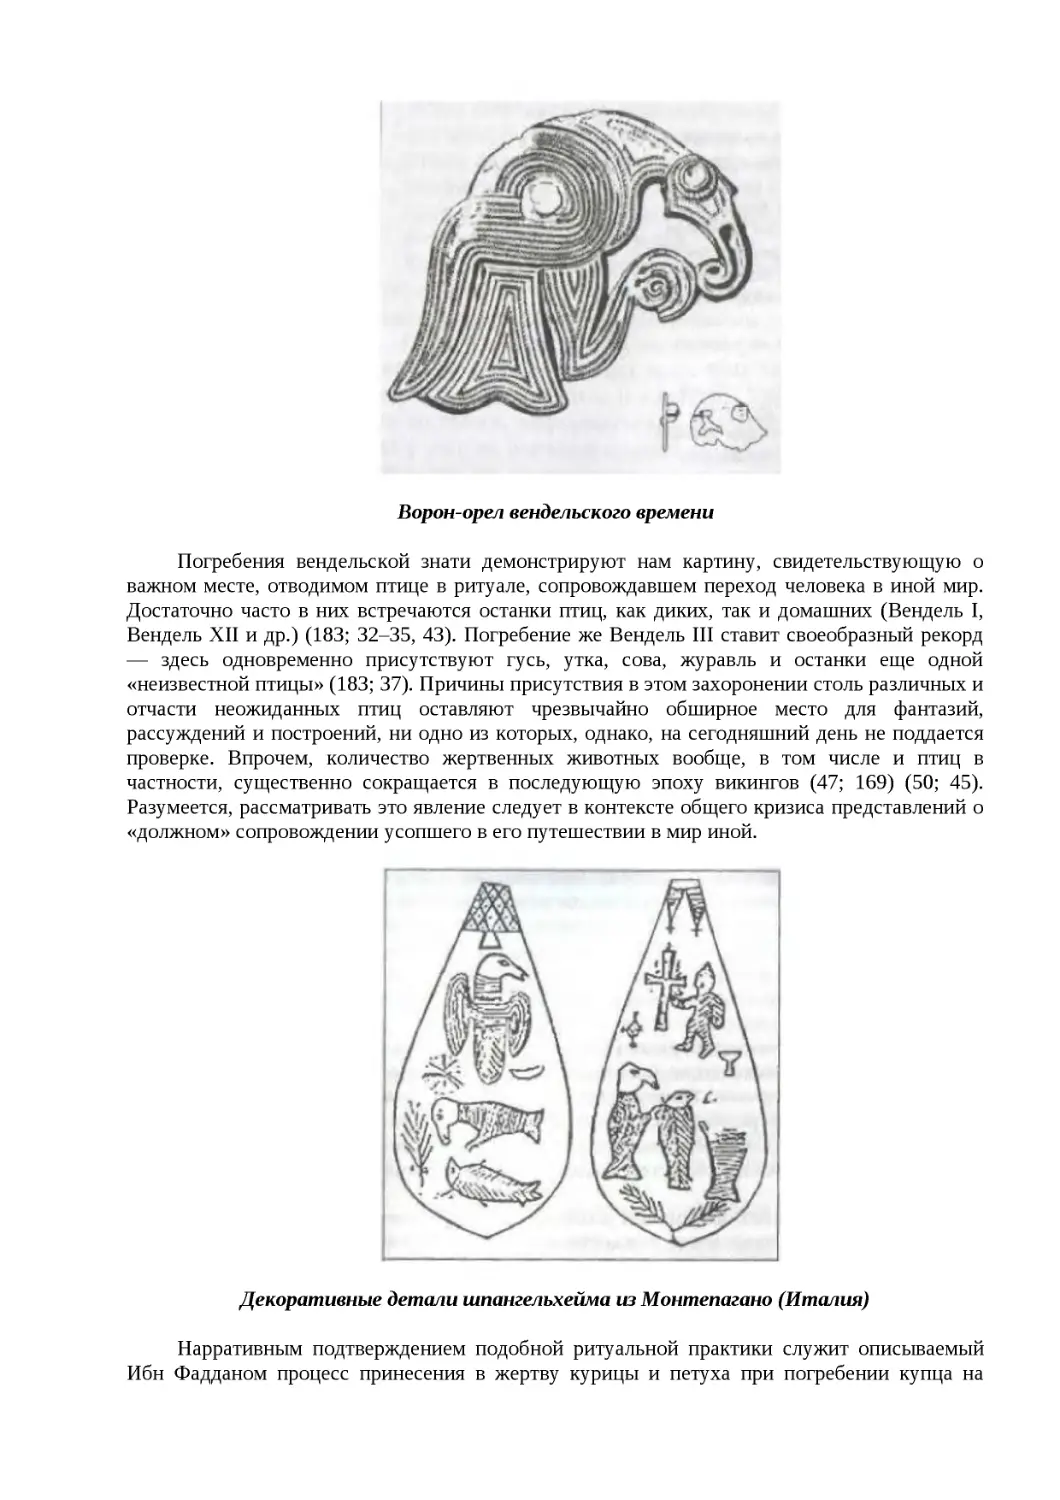 ﻿Ворон-орел вендельского времен
﻿Декоративные детали шпангельхейма из Монтепагано øИталия